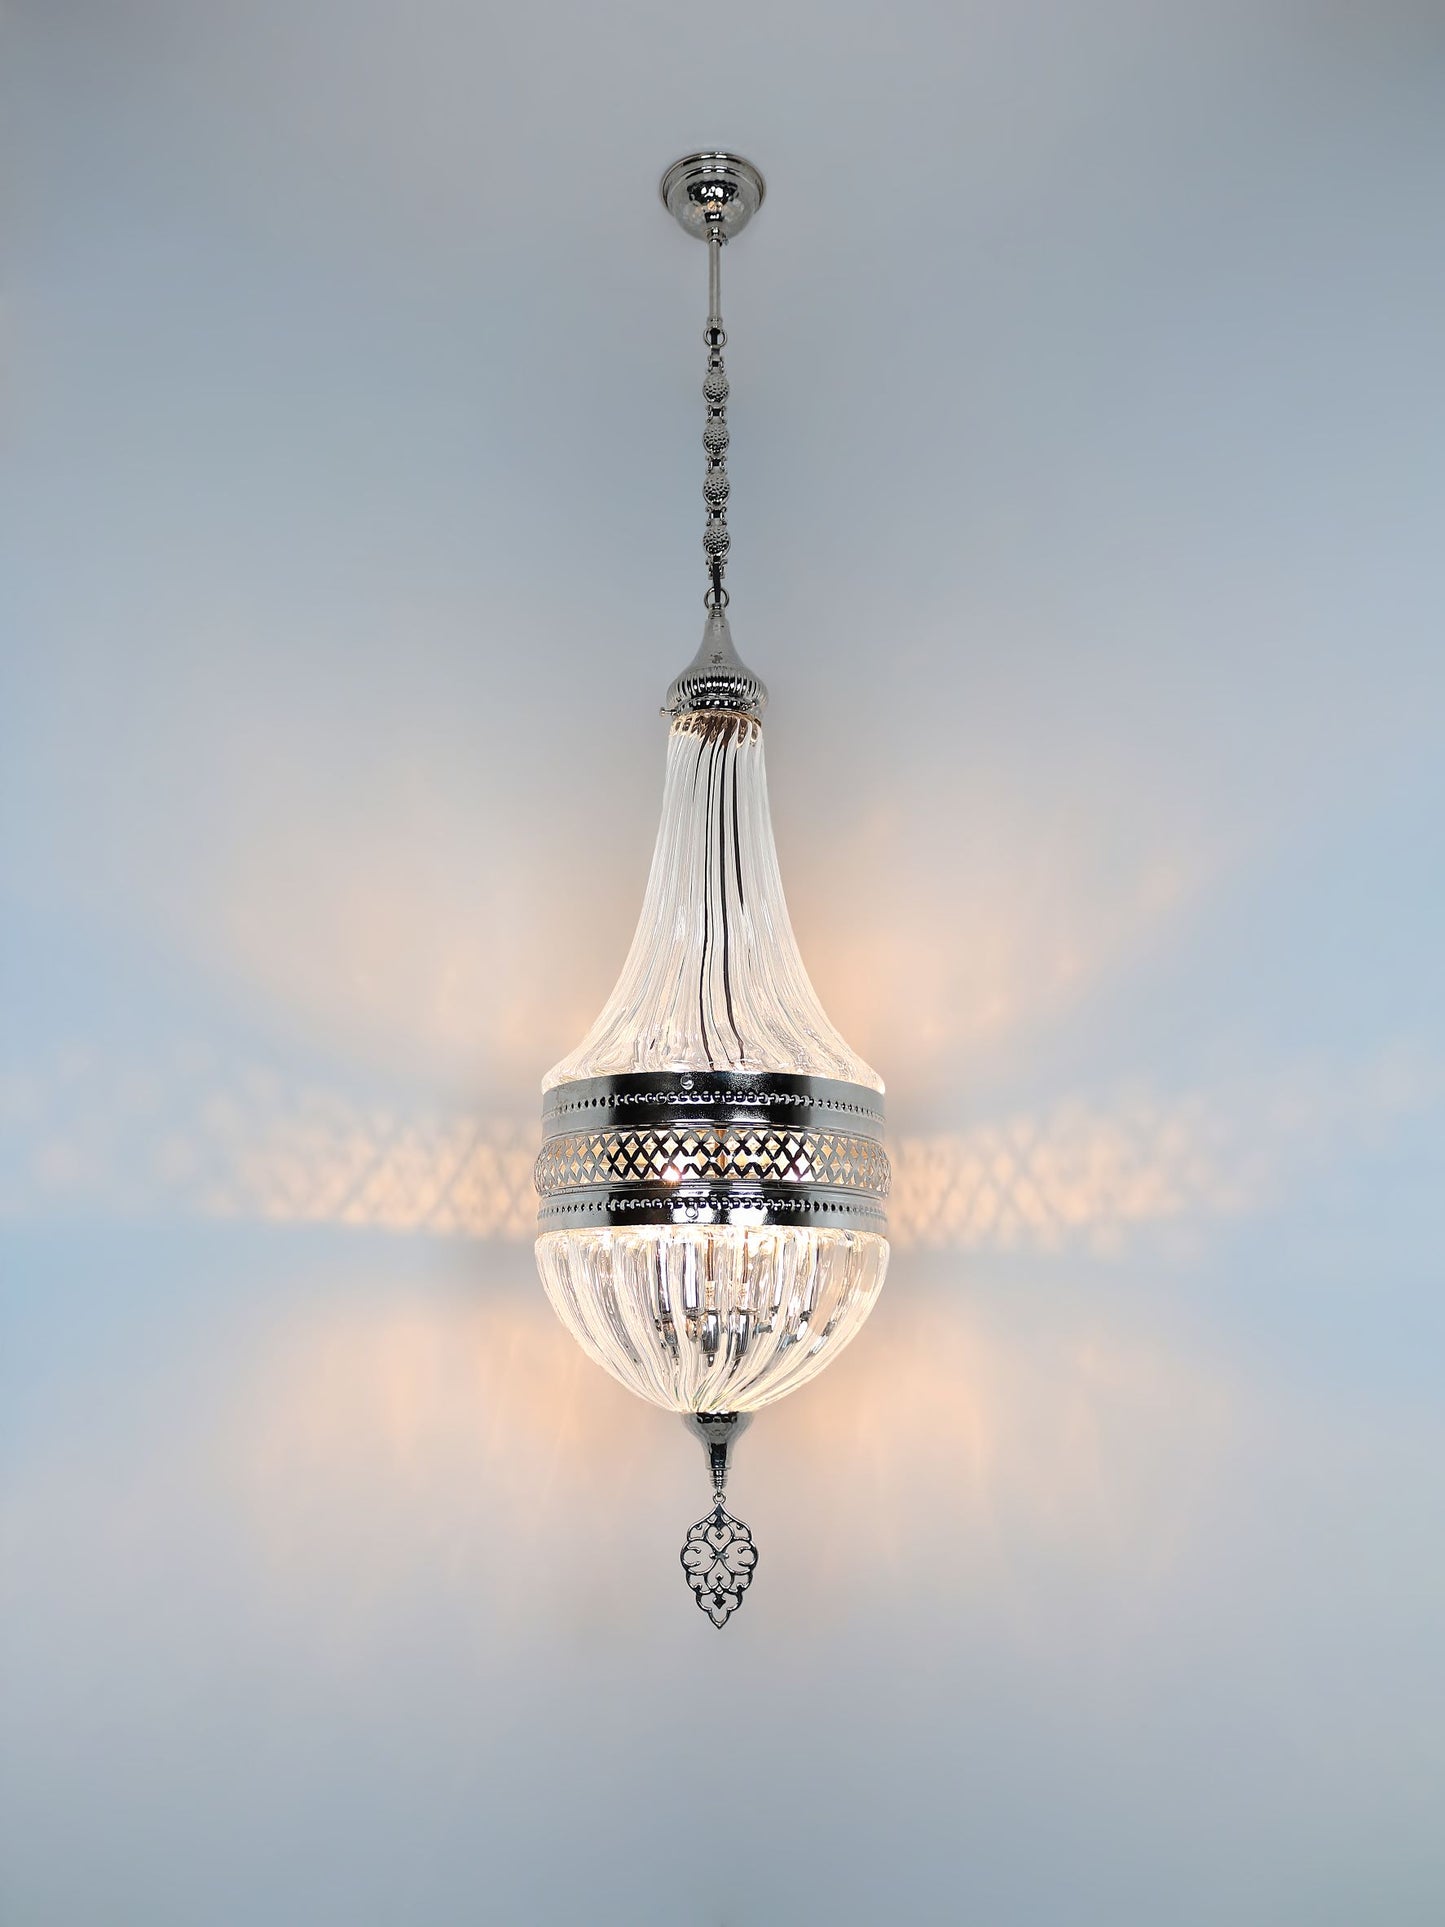 Pyrex Glass Lantern Pandant Lamp